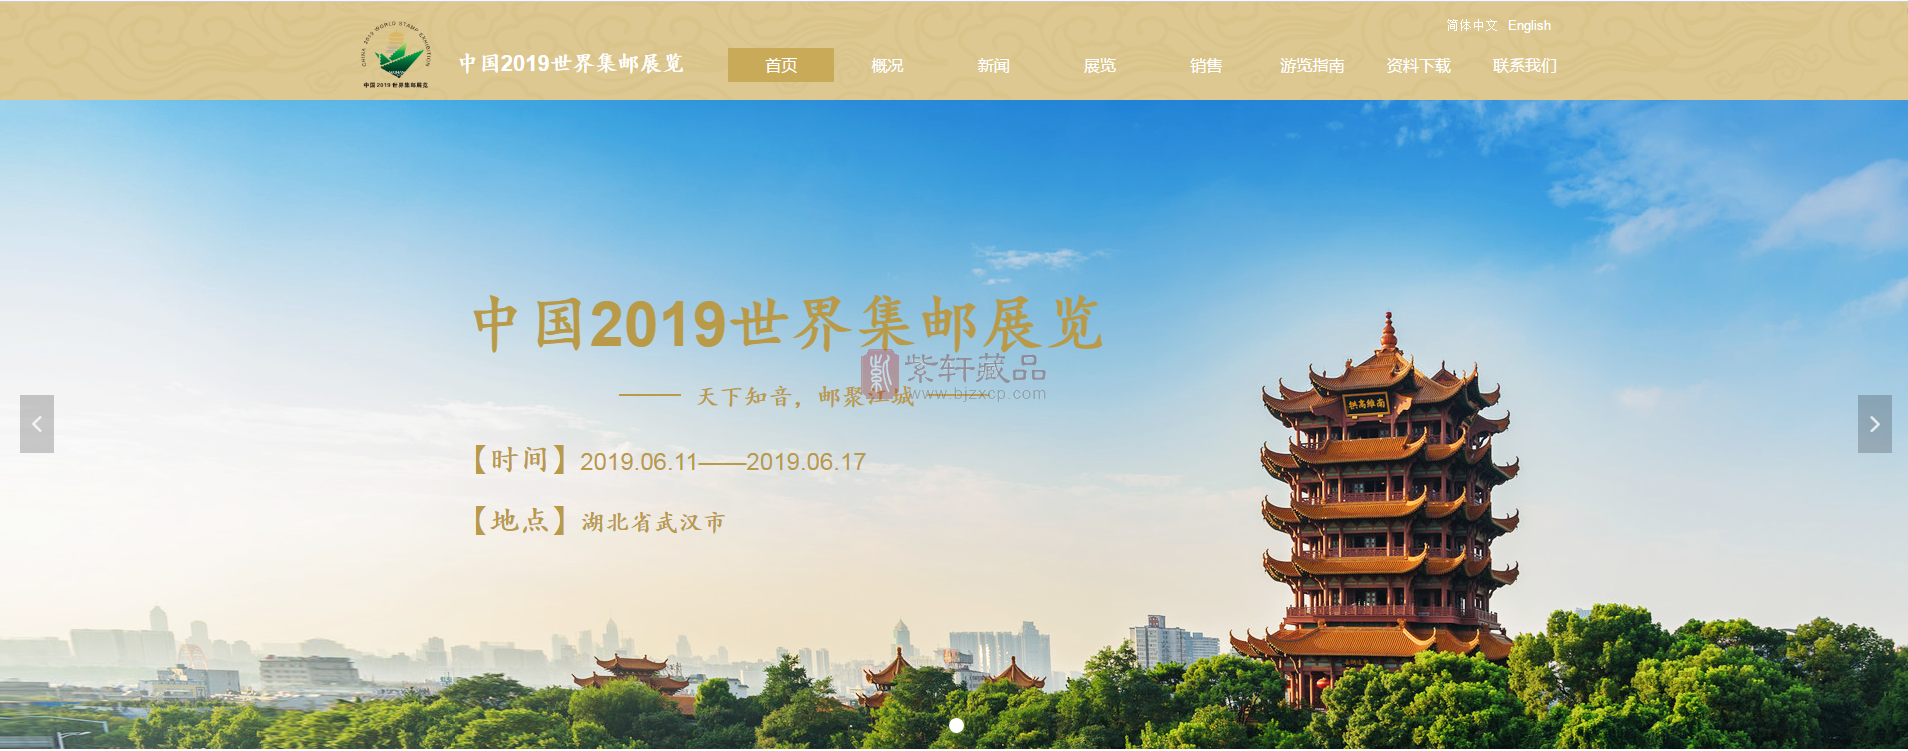 中国2019世界集邮展览官网已经上线